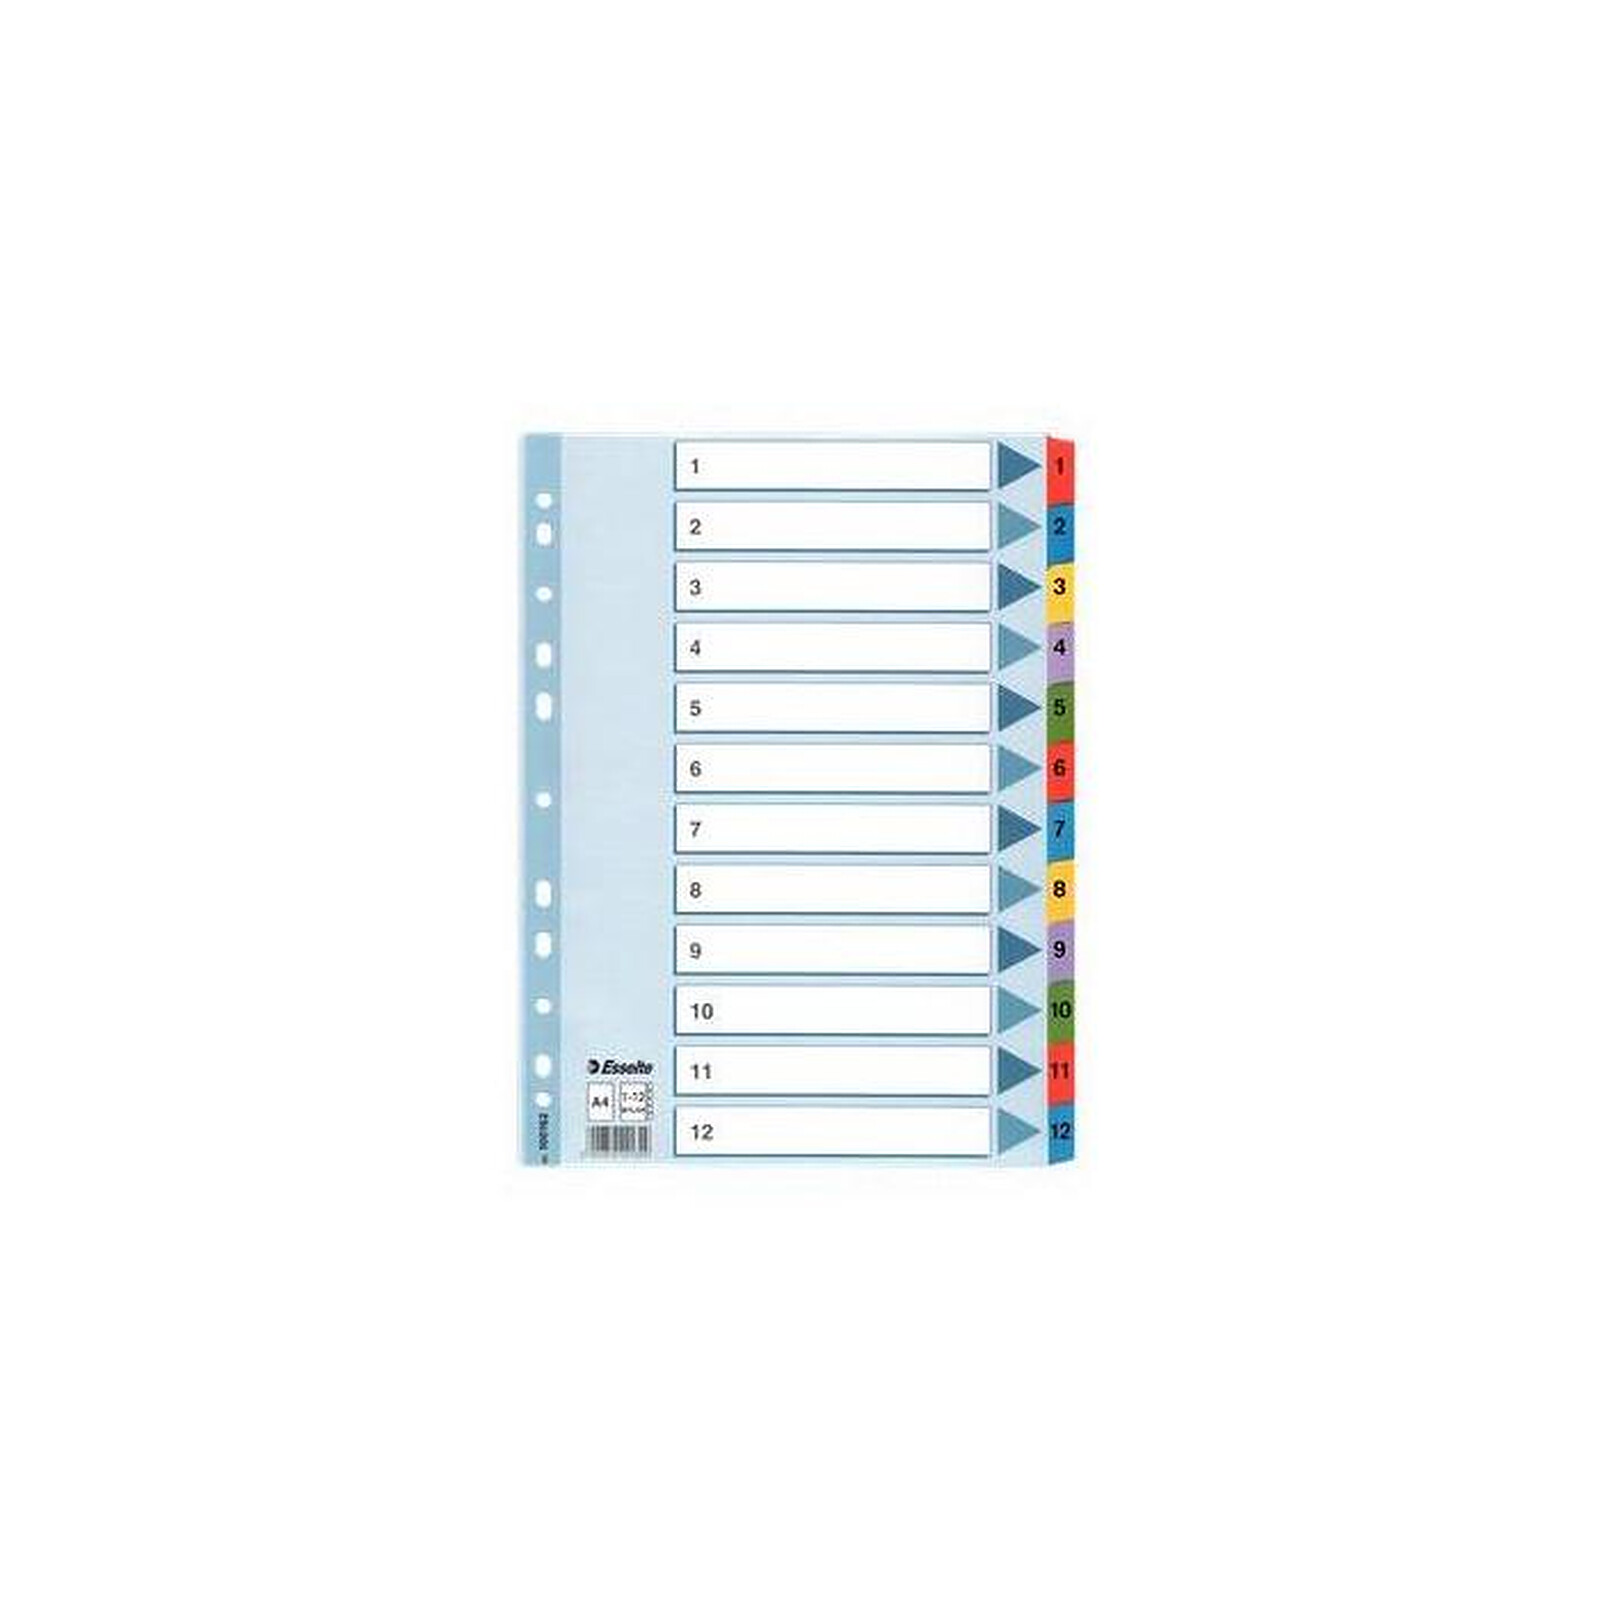 ESSELTE Intercalaires répertoire numérique 1-12, A4 Mylar, en couleurs x 10  - Intercalaire - LDLC